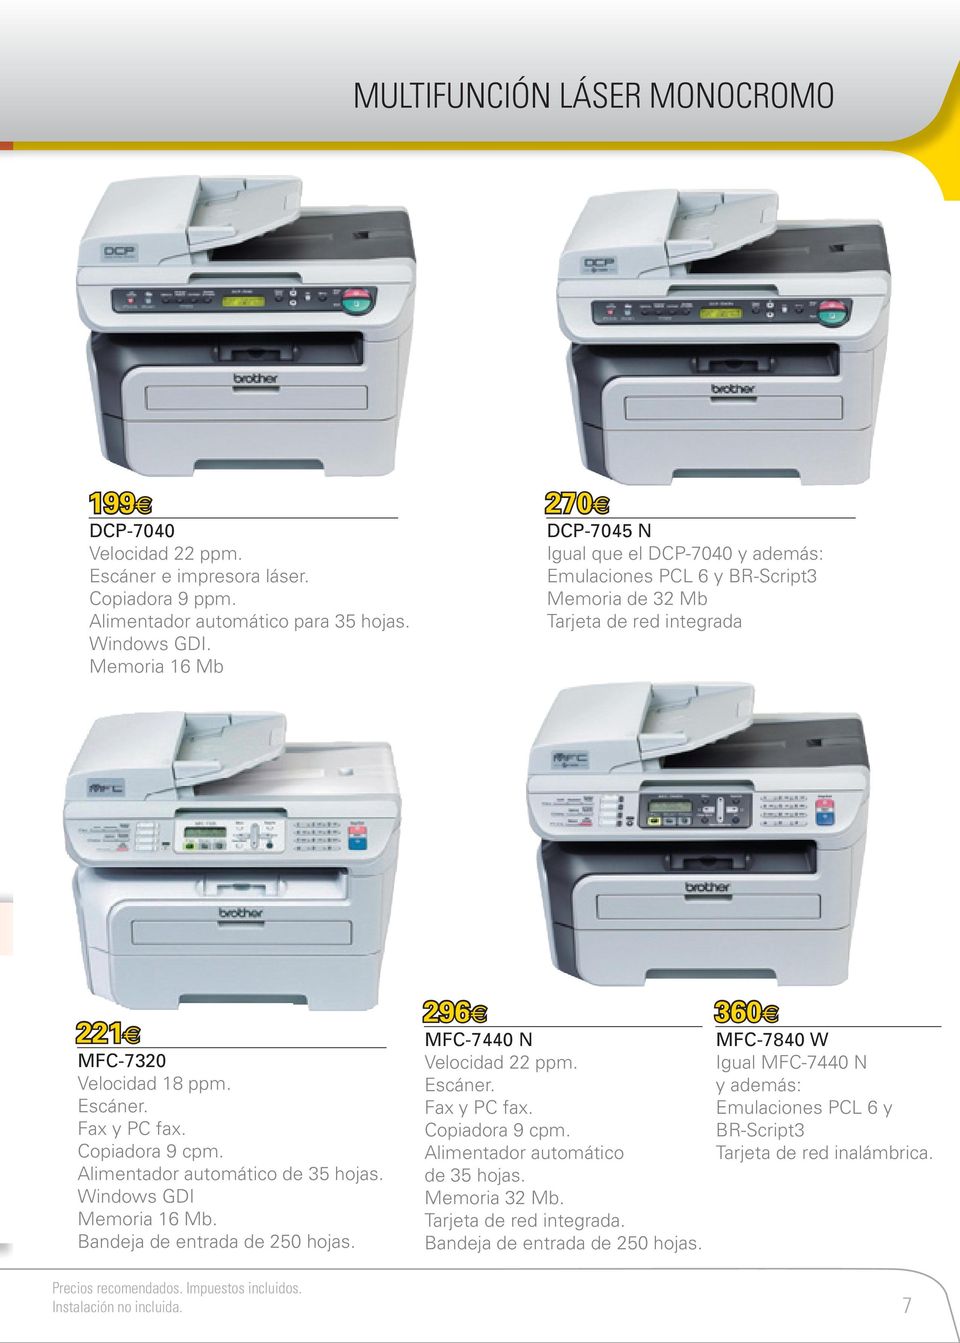 Escáner. Fax y PC fax. Alimentador automático de 35 hojas. Windows GDI Memoria 16 Mb. Bandeja de entrada de 250 hojas. 296 MFC-7440 N Velocidad 22 ppm. Escáner.